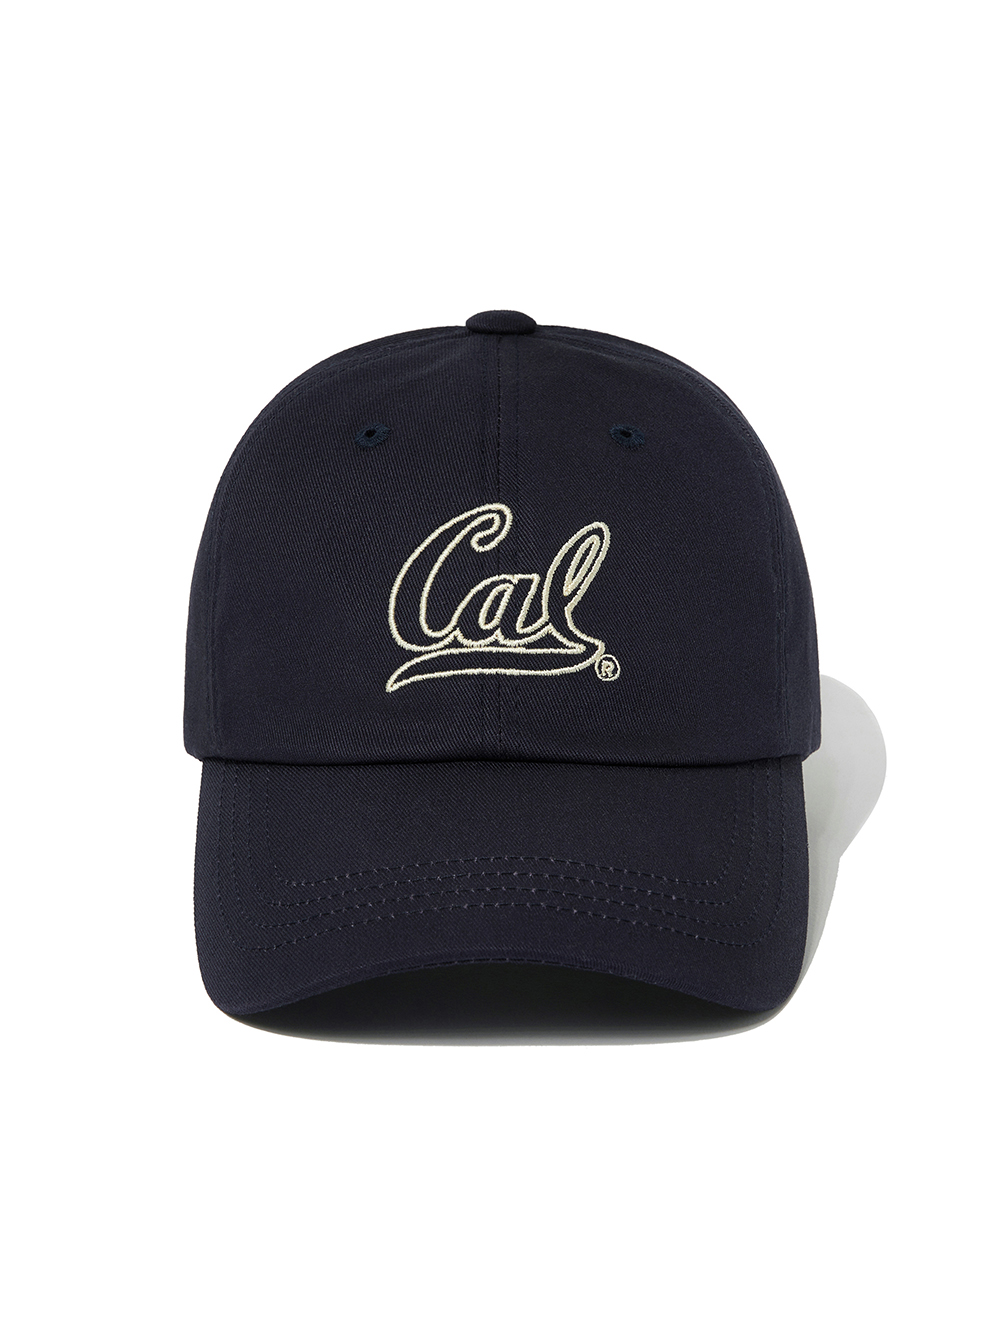 OUTLINE STITCH CAL LOGO CAP [NAVY]